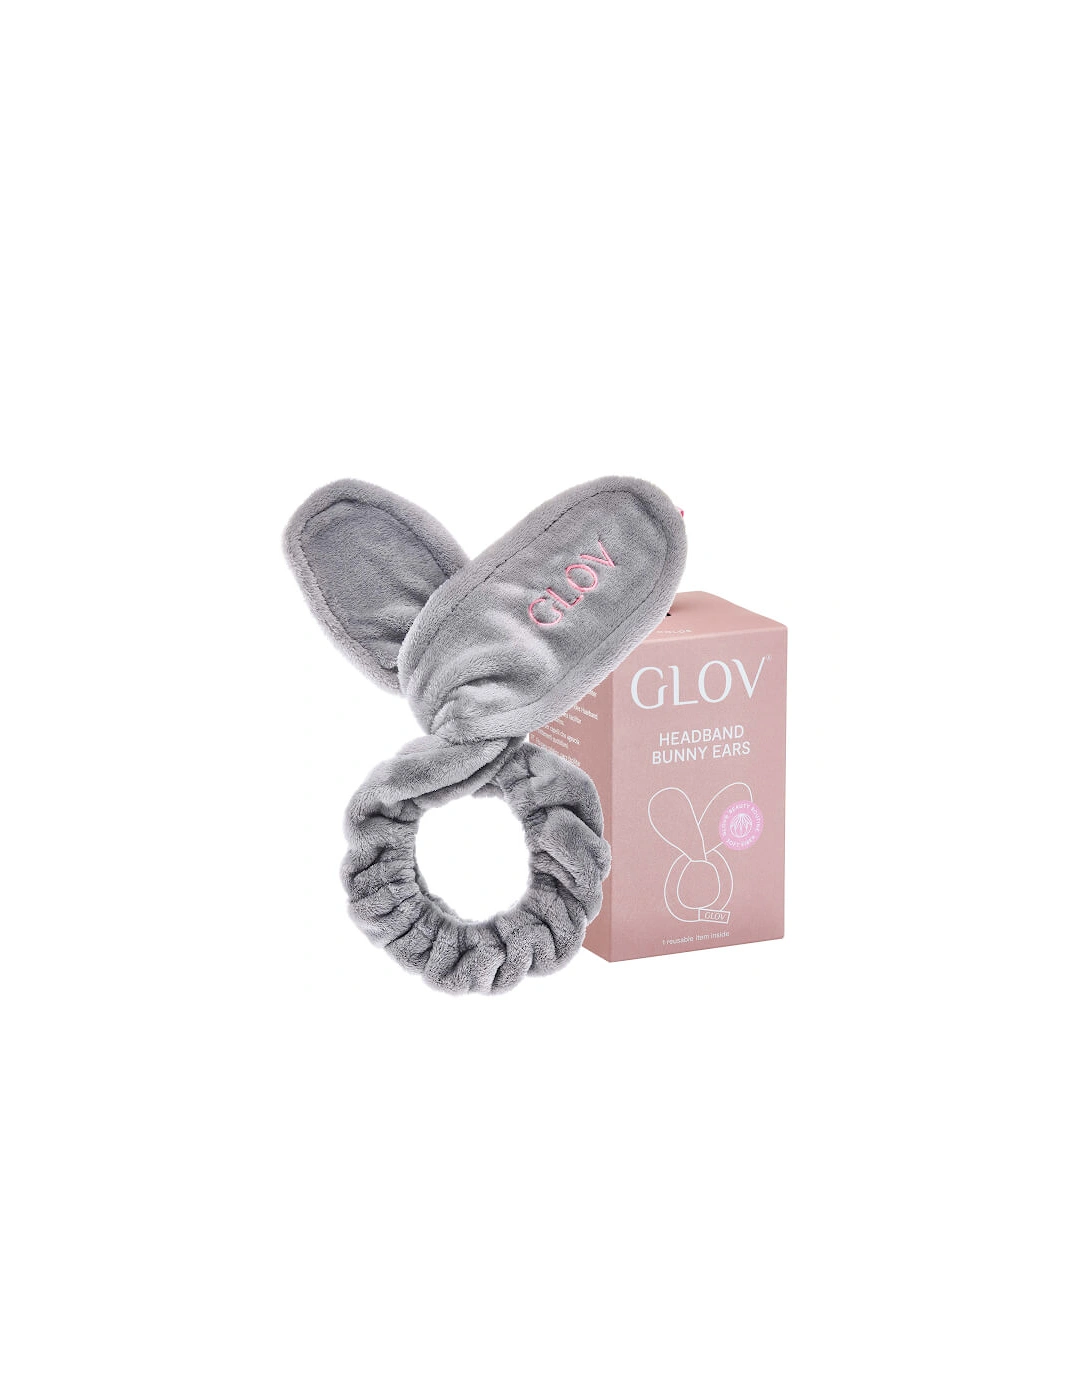 GLOV® Bunny Ears Hair Protecting Headband and Hair Tie - Grey - GLOV, 2 of 1